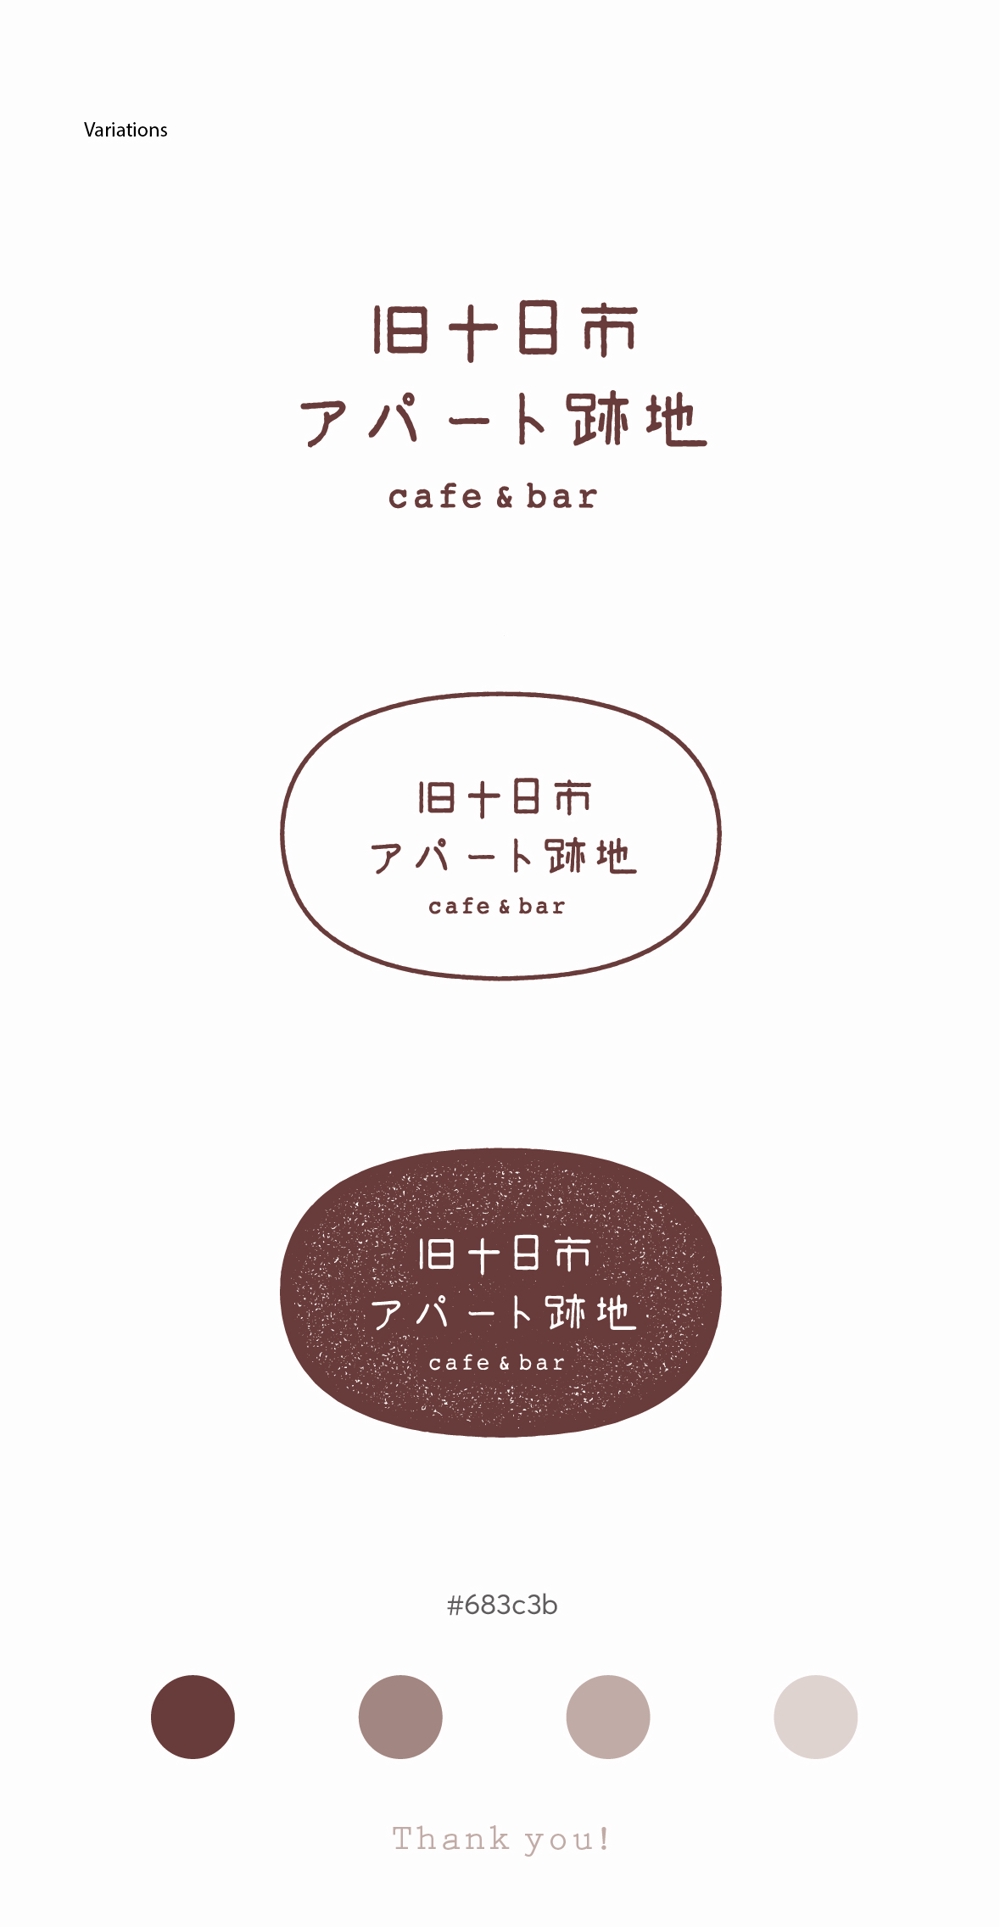 カフェ&バー「旧十日市アパート跡地」のロゴデザインの募集